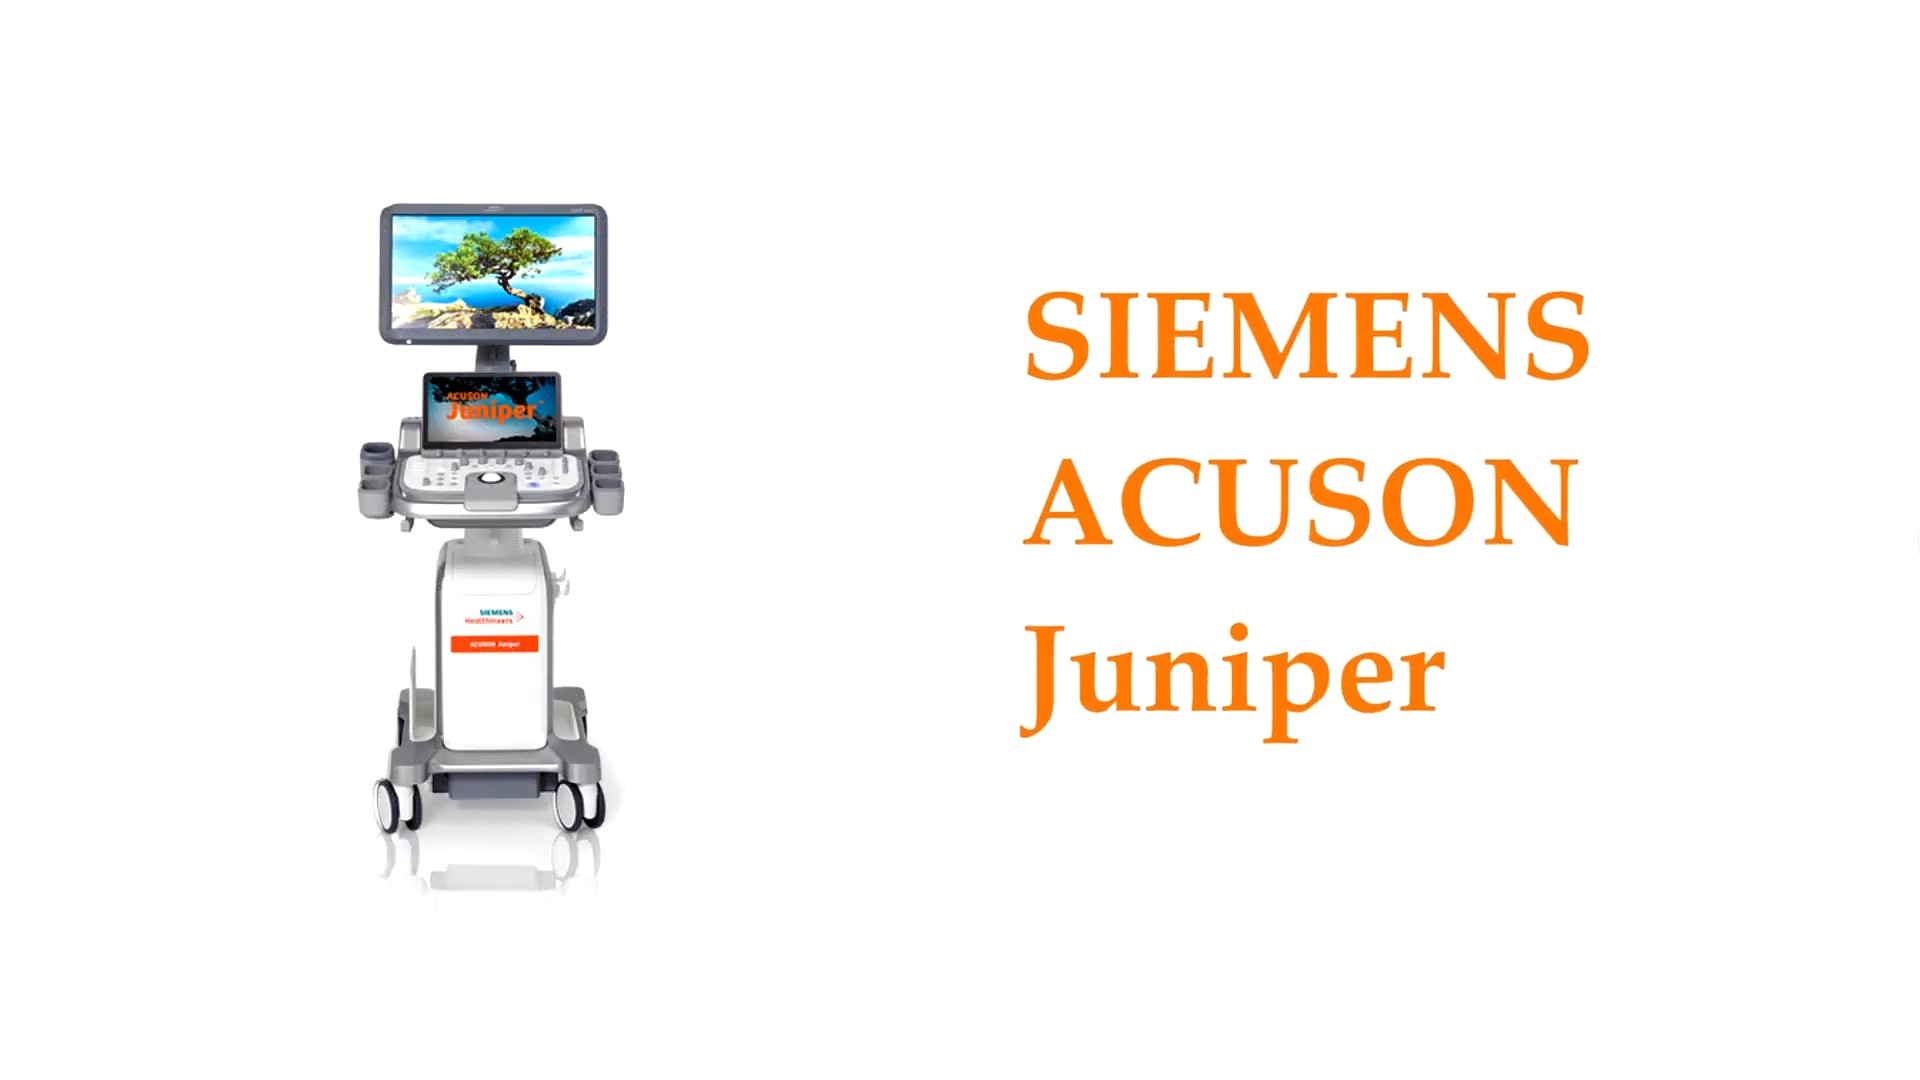 Ультразвуковой аппарат высокого класса Siemens Acuson Juniper